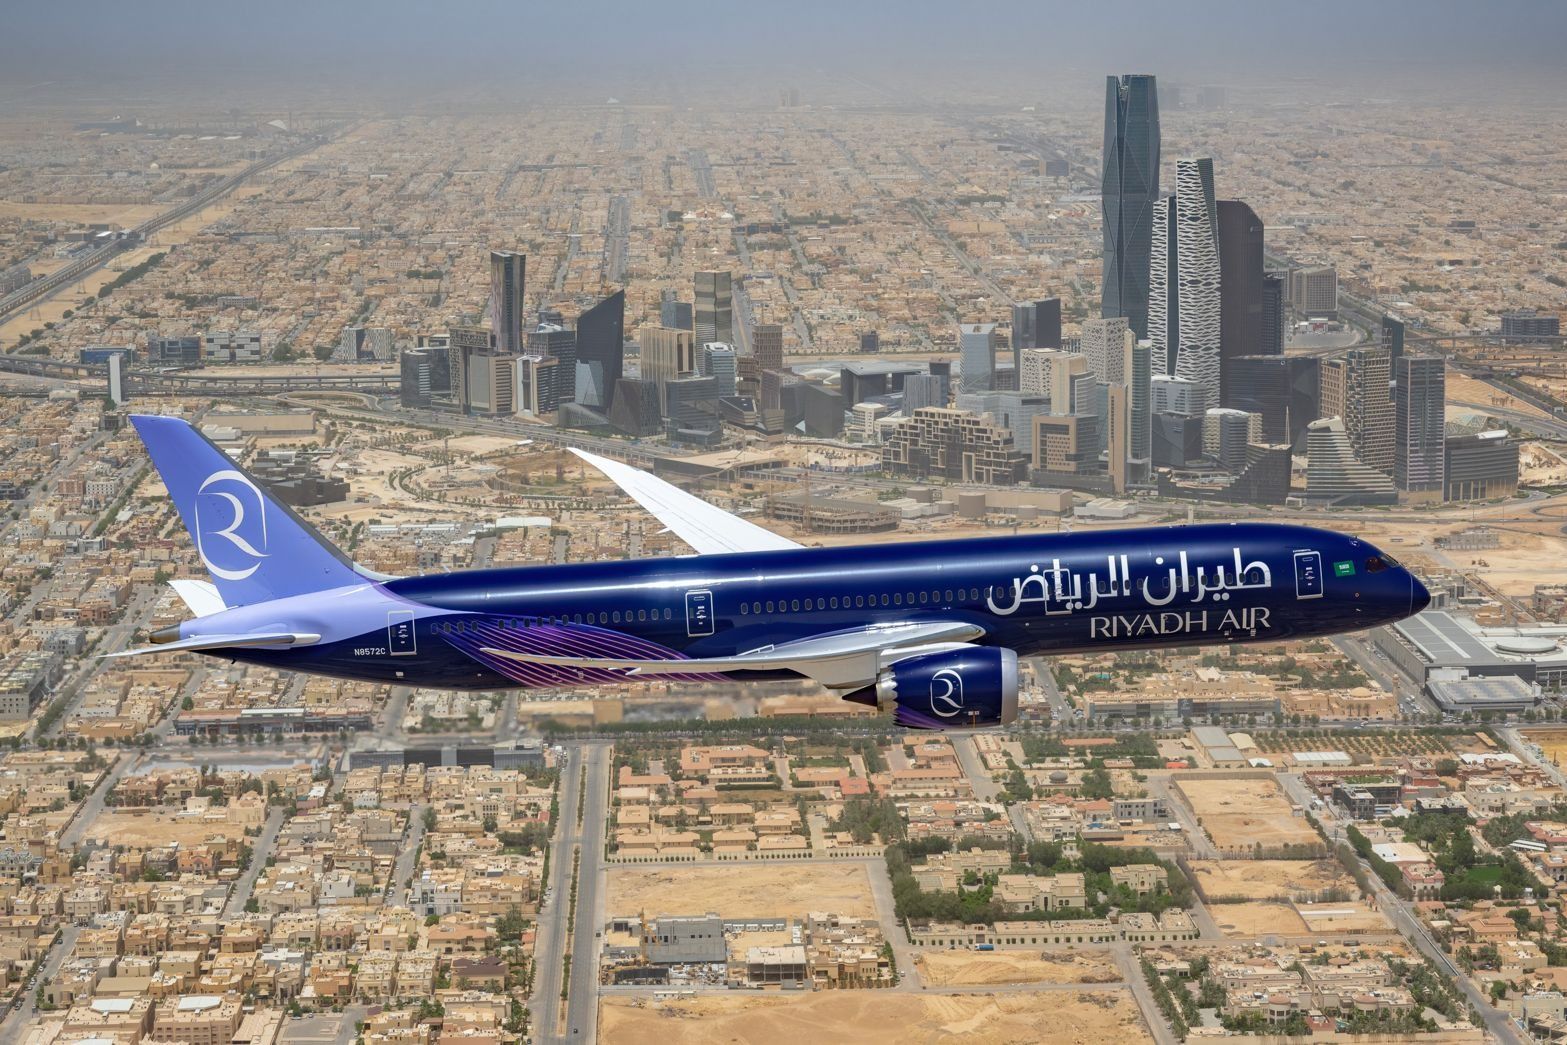 Riyadh Airways' first Boeing 787 flies over Riyadh, Saudi Arabia